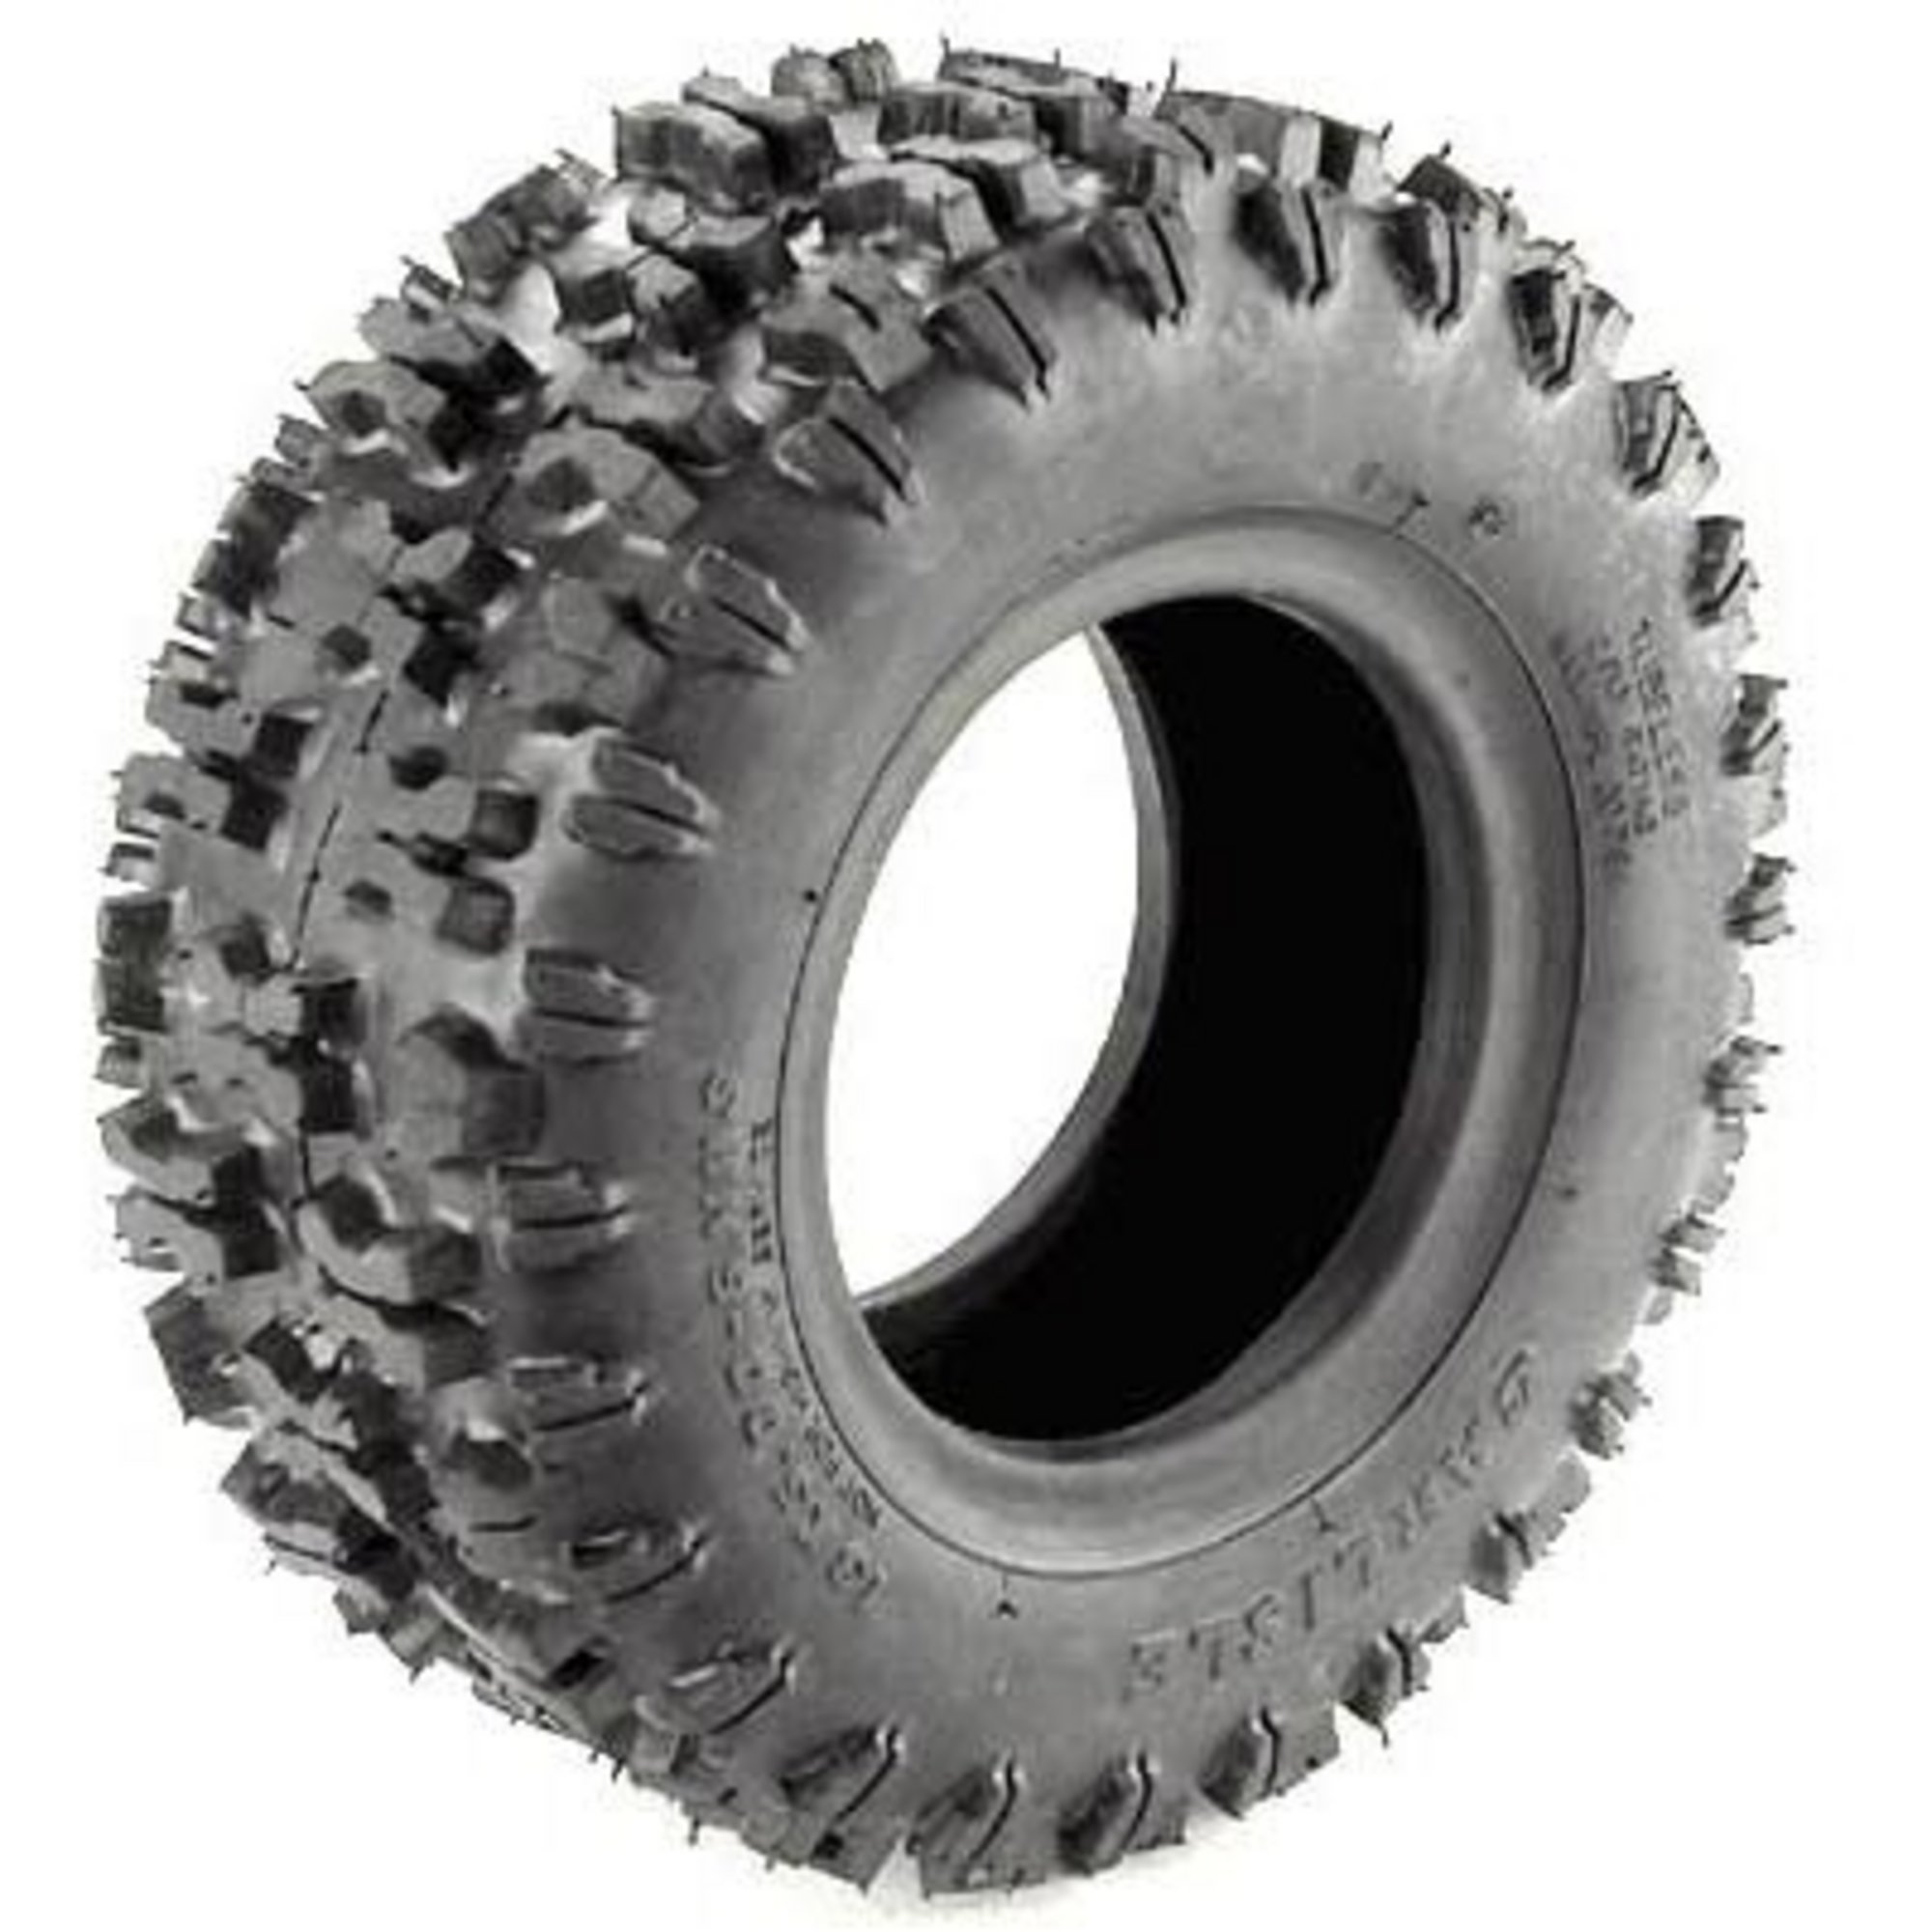 Sno-Hog Snowblower Tire â 16/650 x 8Inch